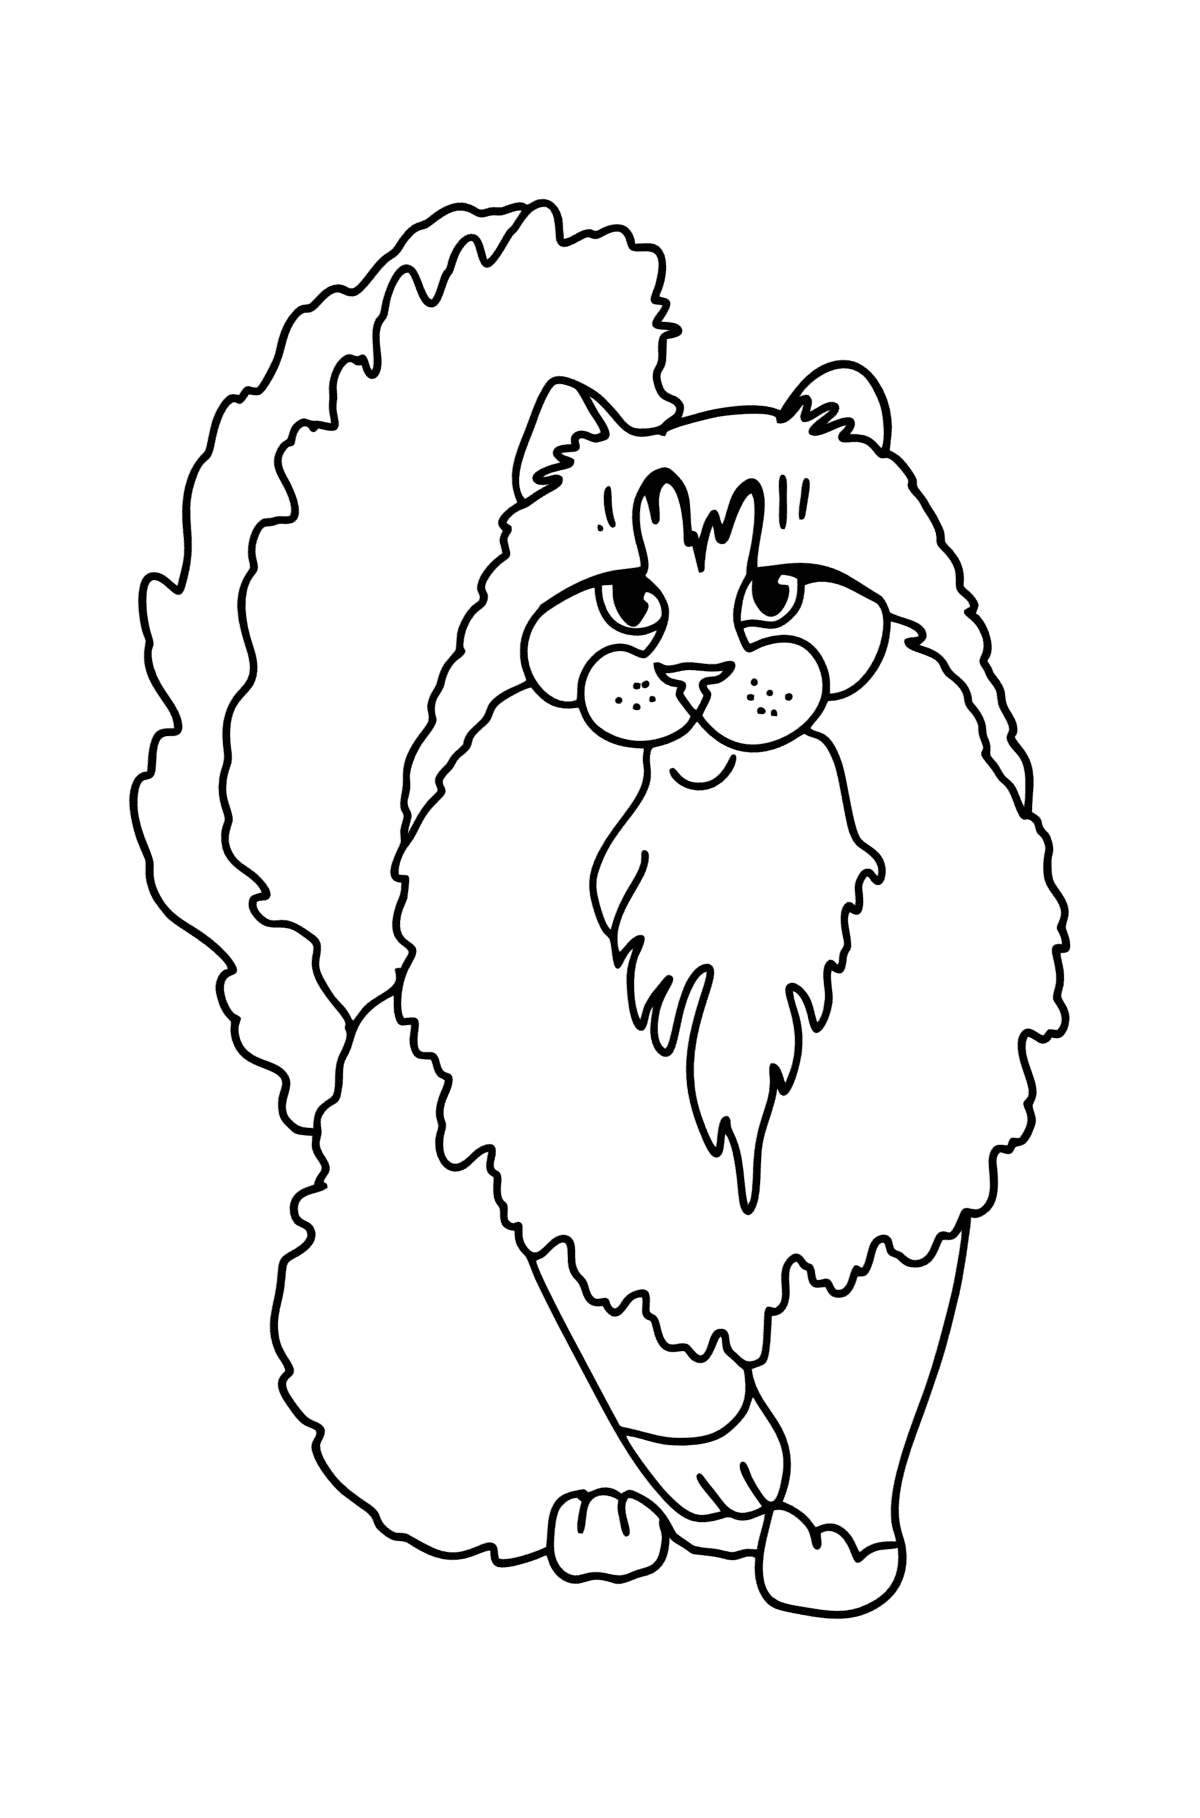 Dibujo de Gato del Bosque de Noruega para colorear - Dibujos para Colorear para Niños